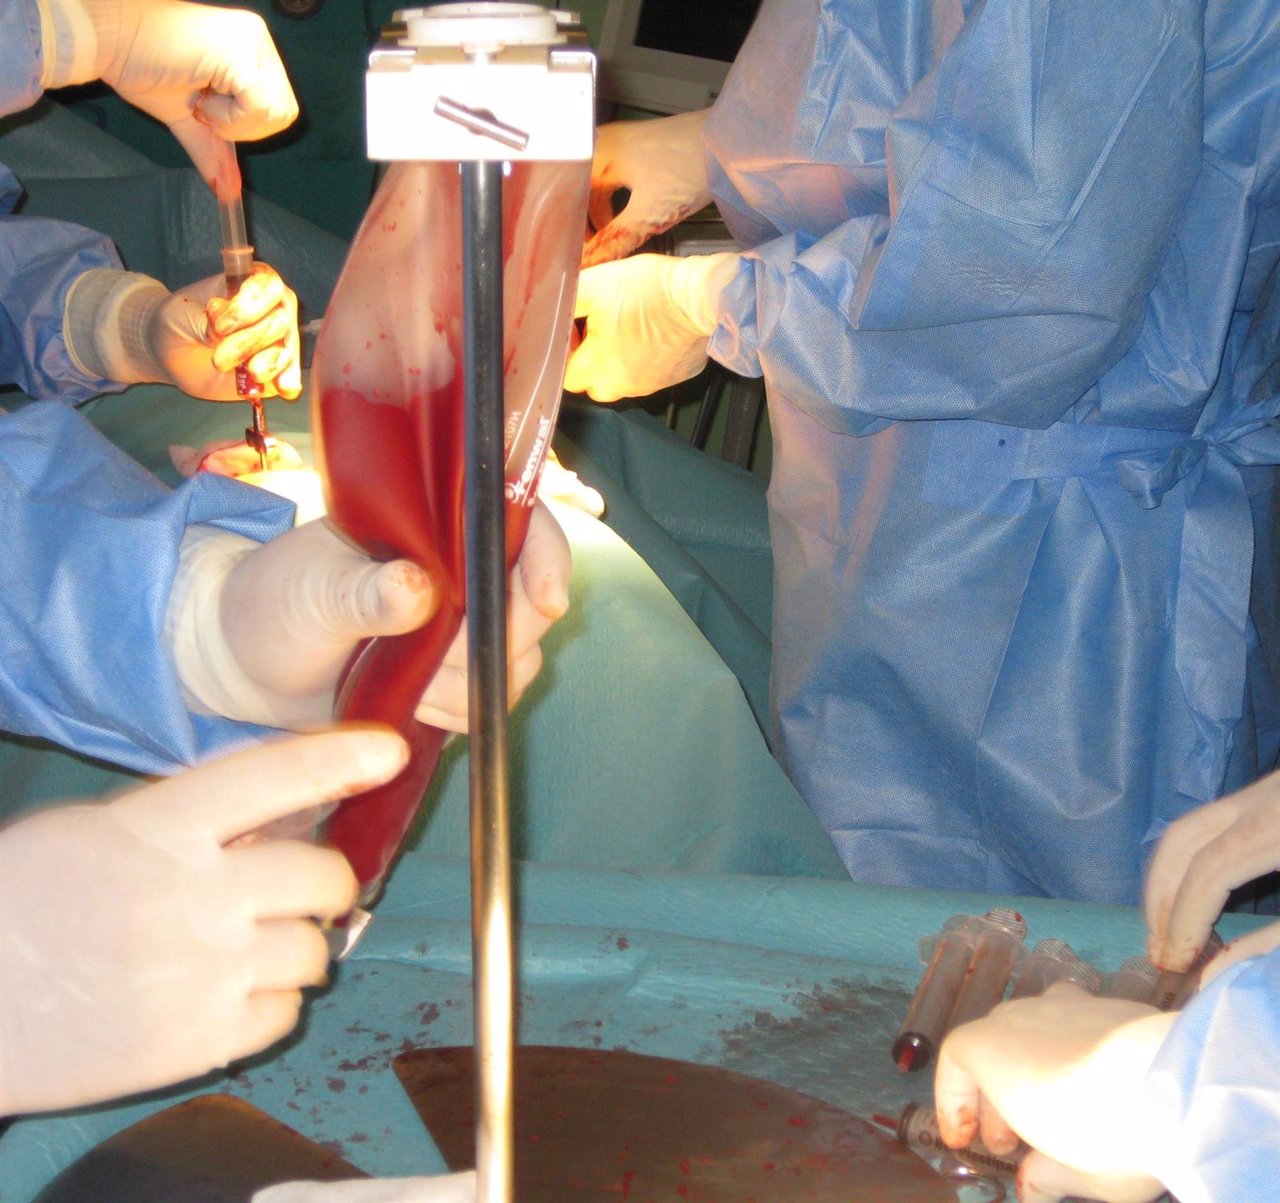 Técnica de extracción de médula ósea en quirófano